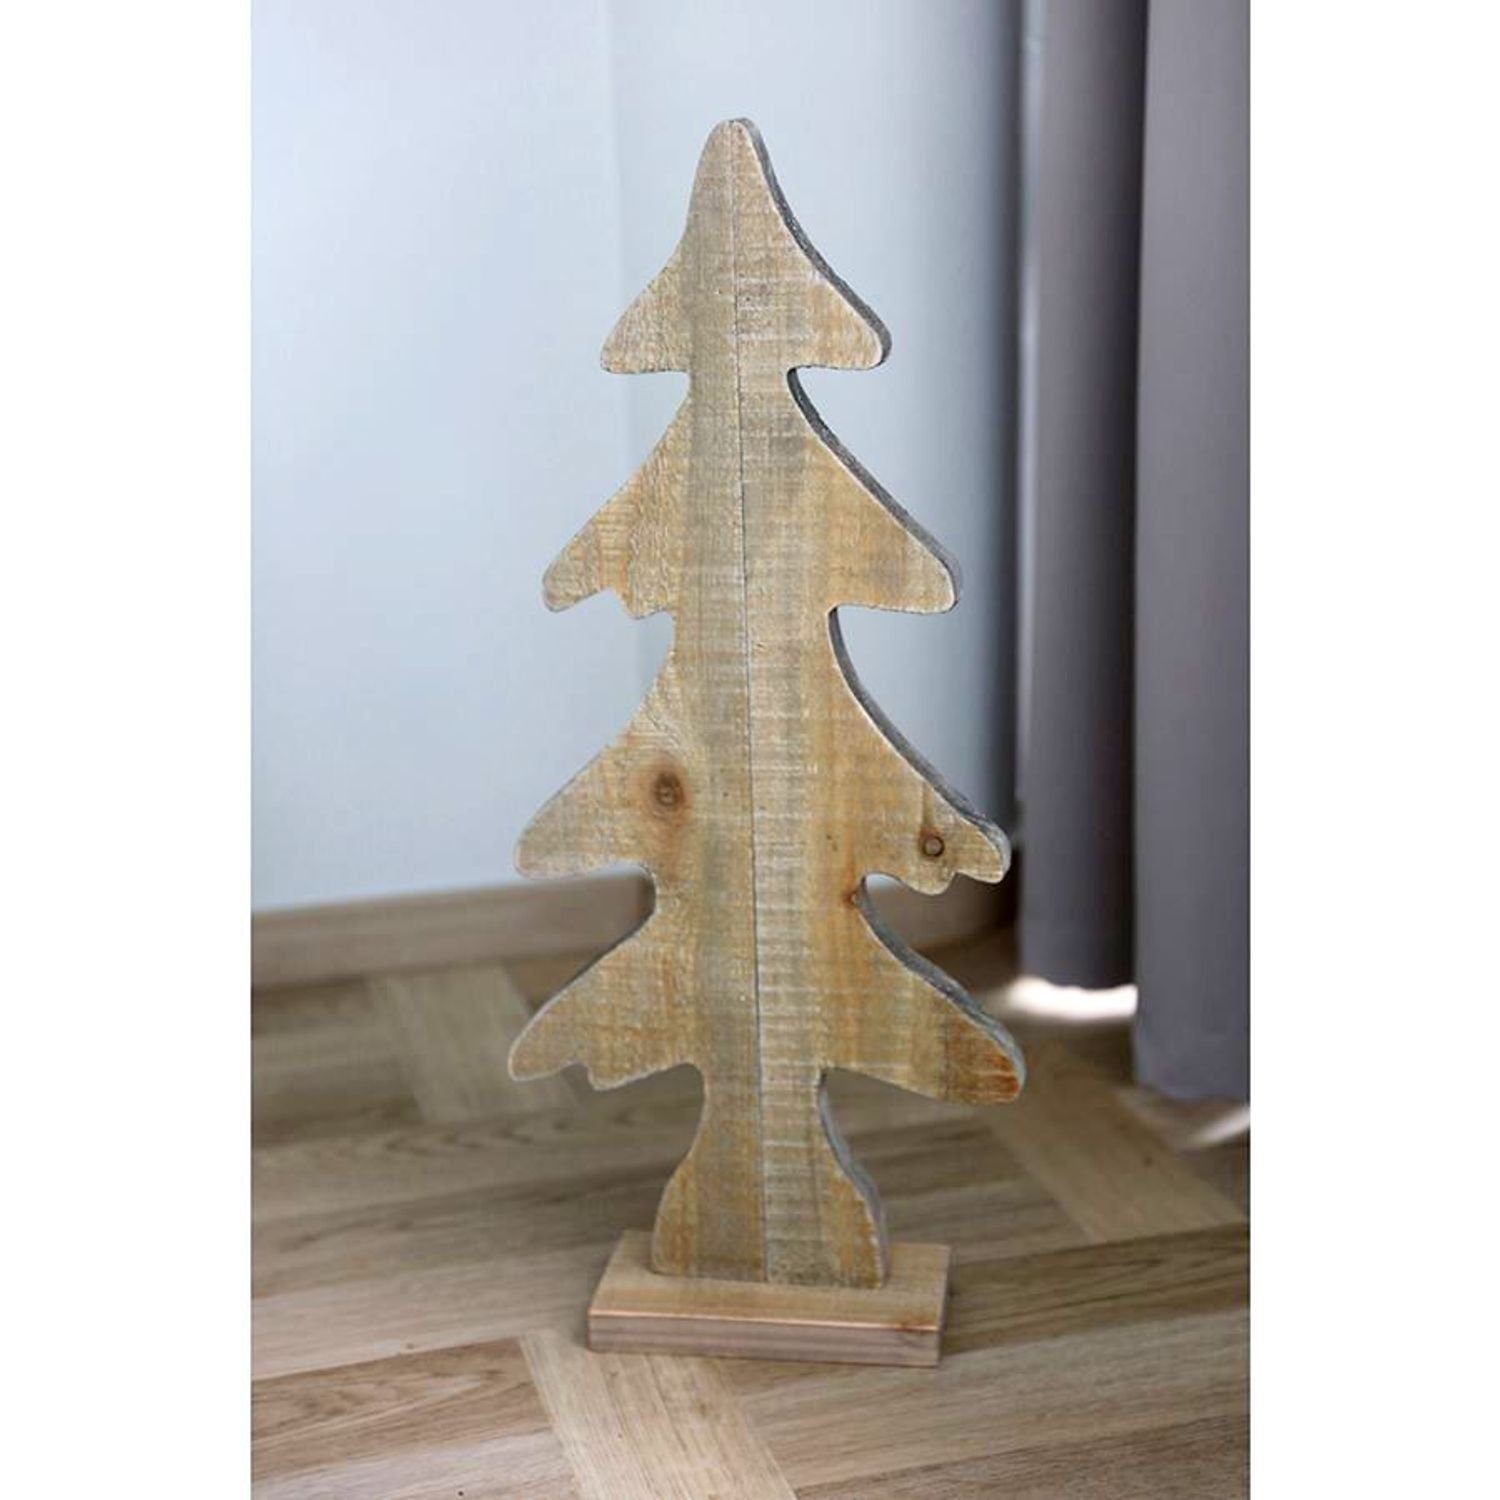 Dekotanne Holz-Weihnachtsbaum Weihnachtsbaum Künstlicher BURI Weihnachtsdeko Tannenbaum 28,5x65x10cm